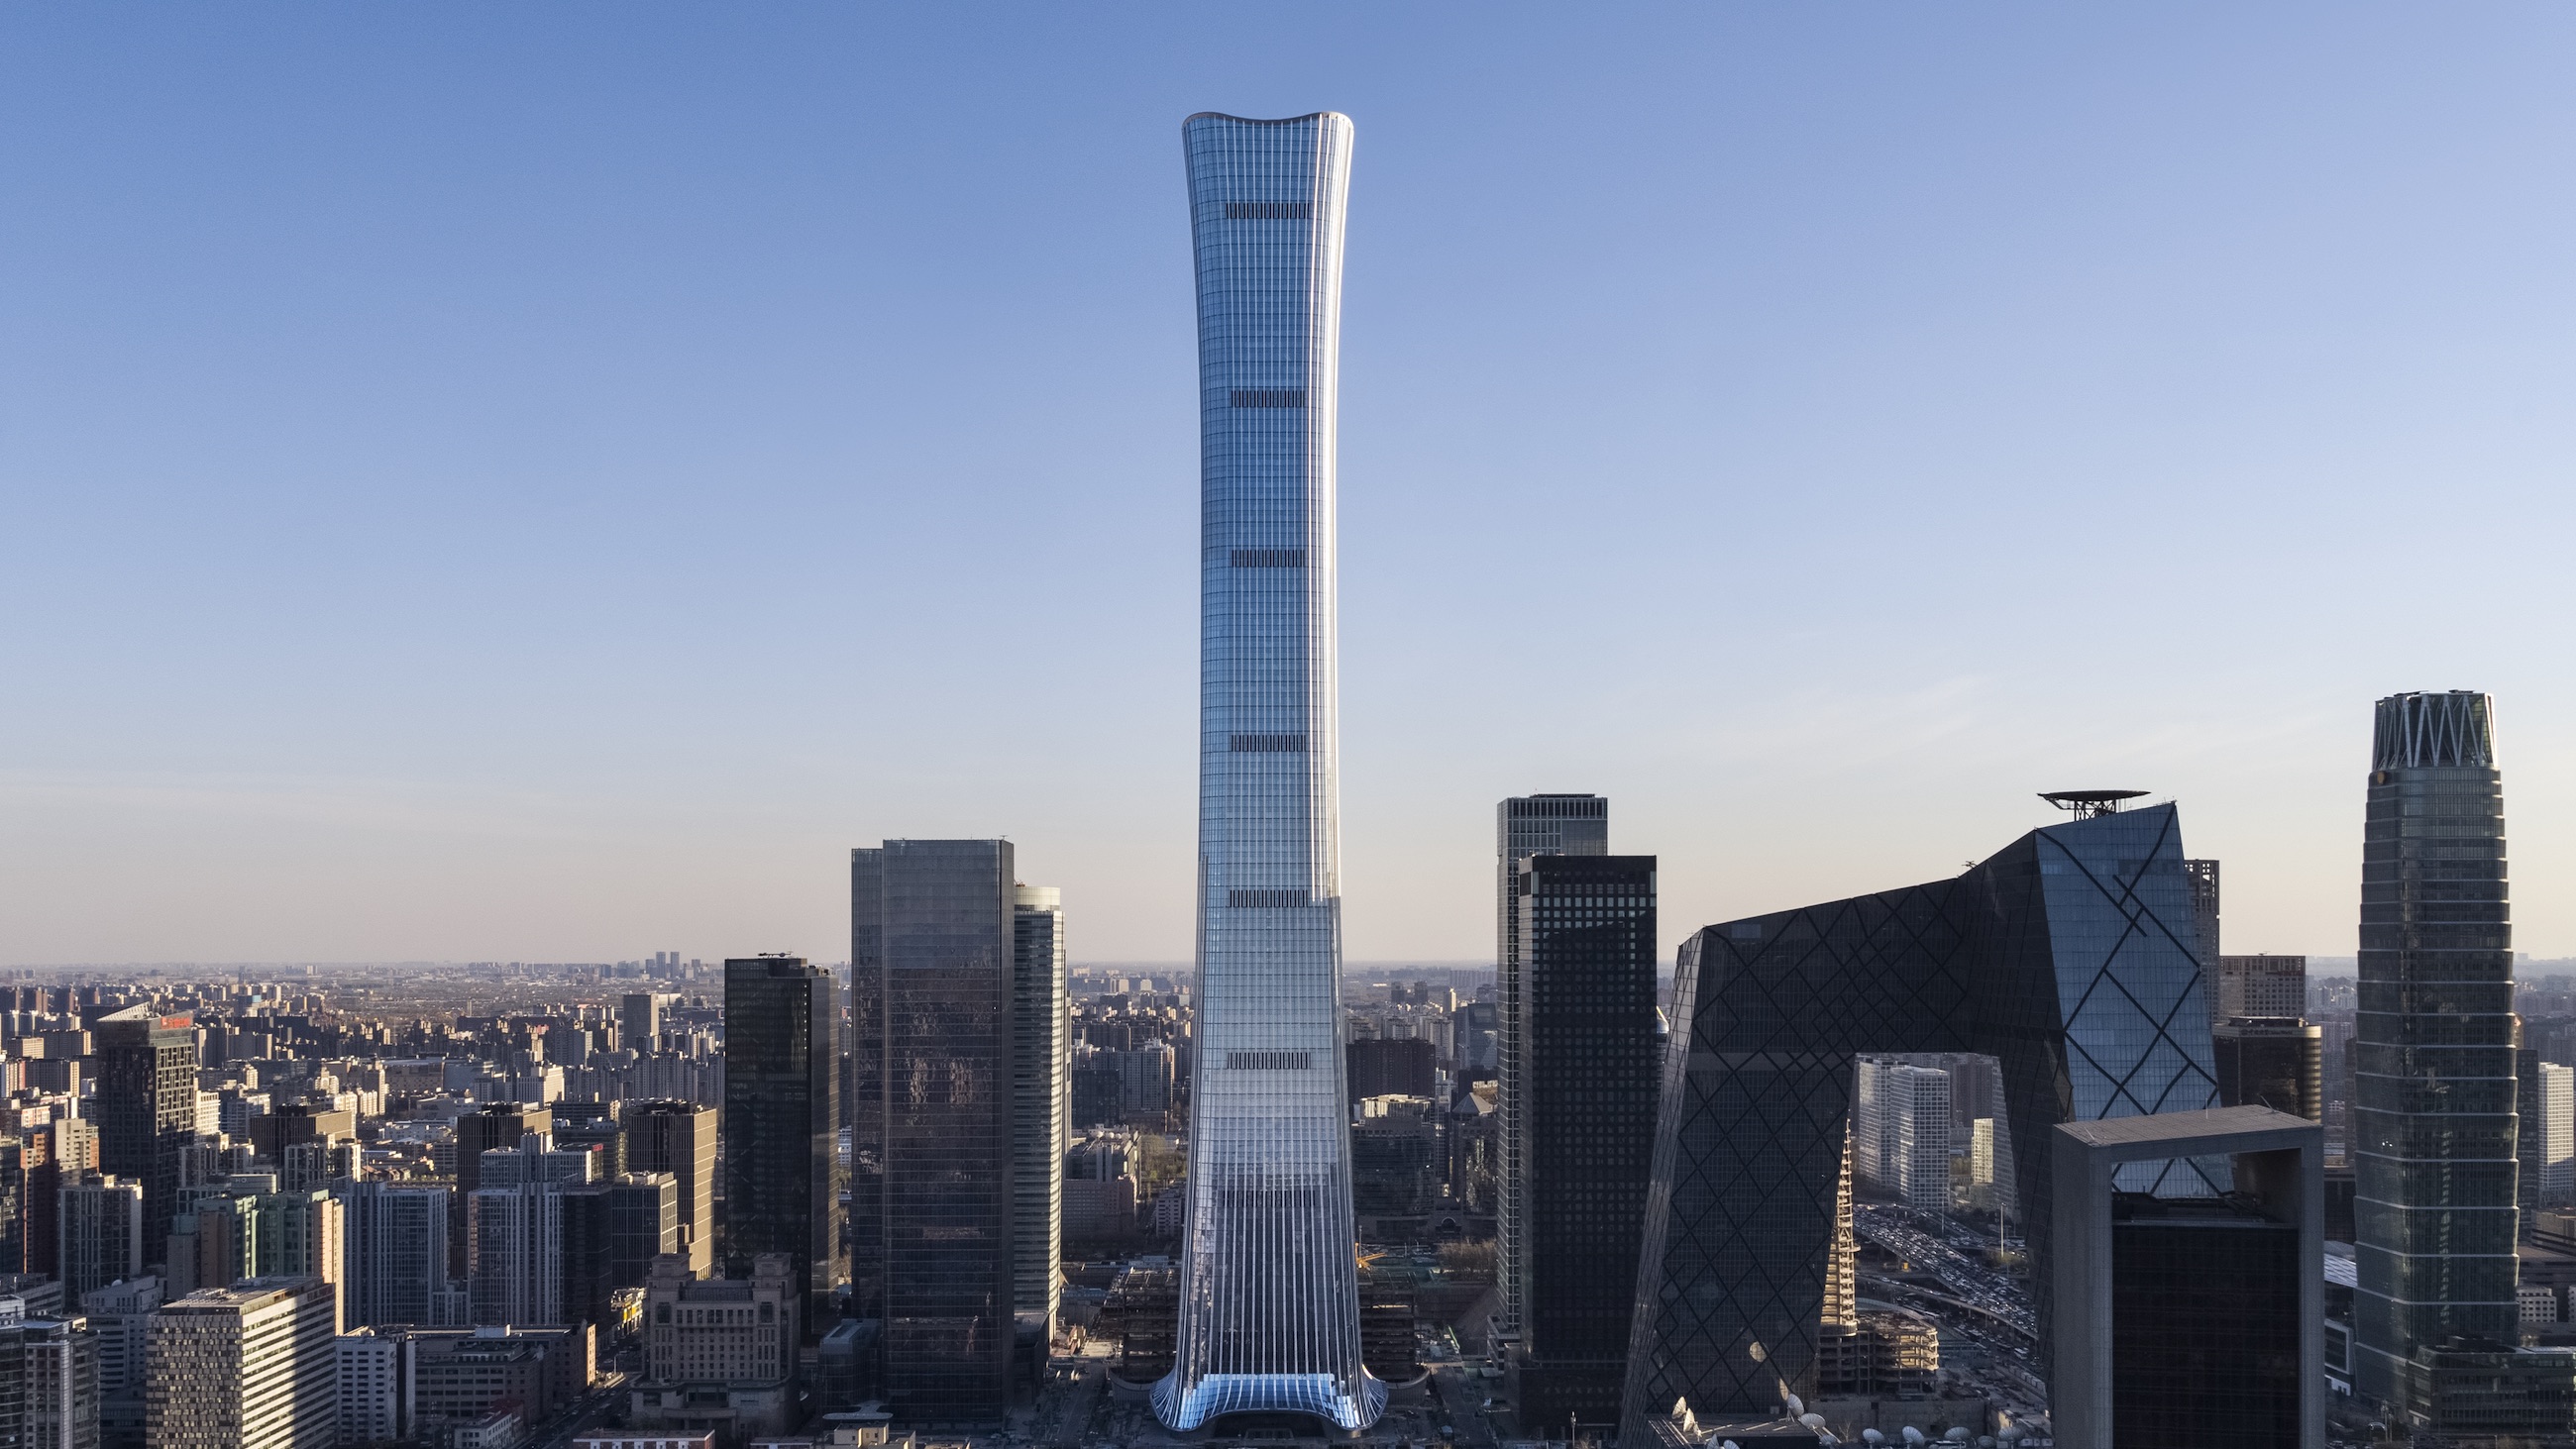 Trung Quốc sẽ hạn chế xây các tòa nhà chọc trời